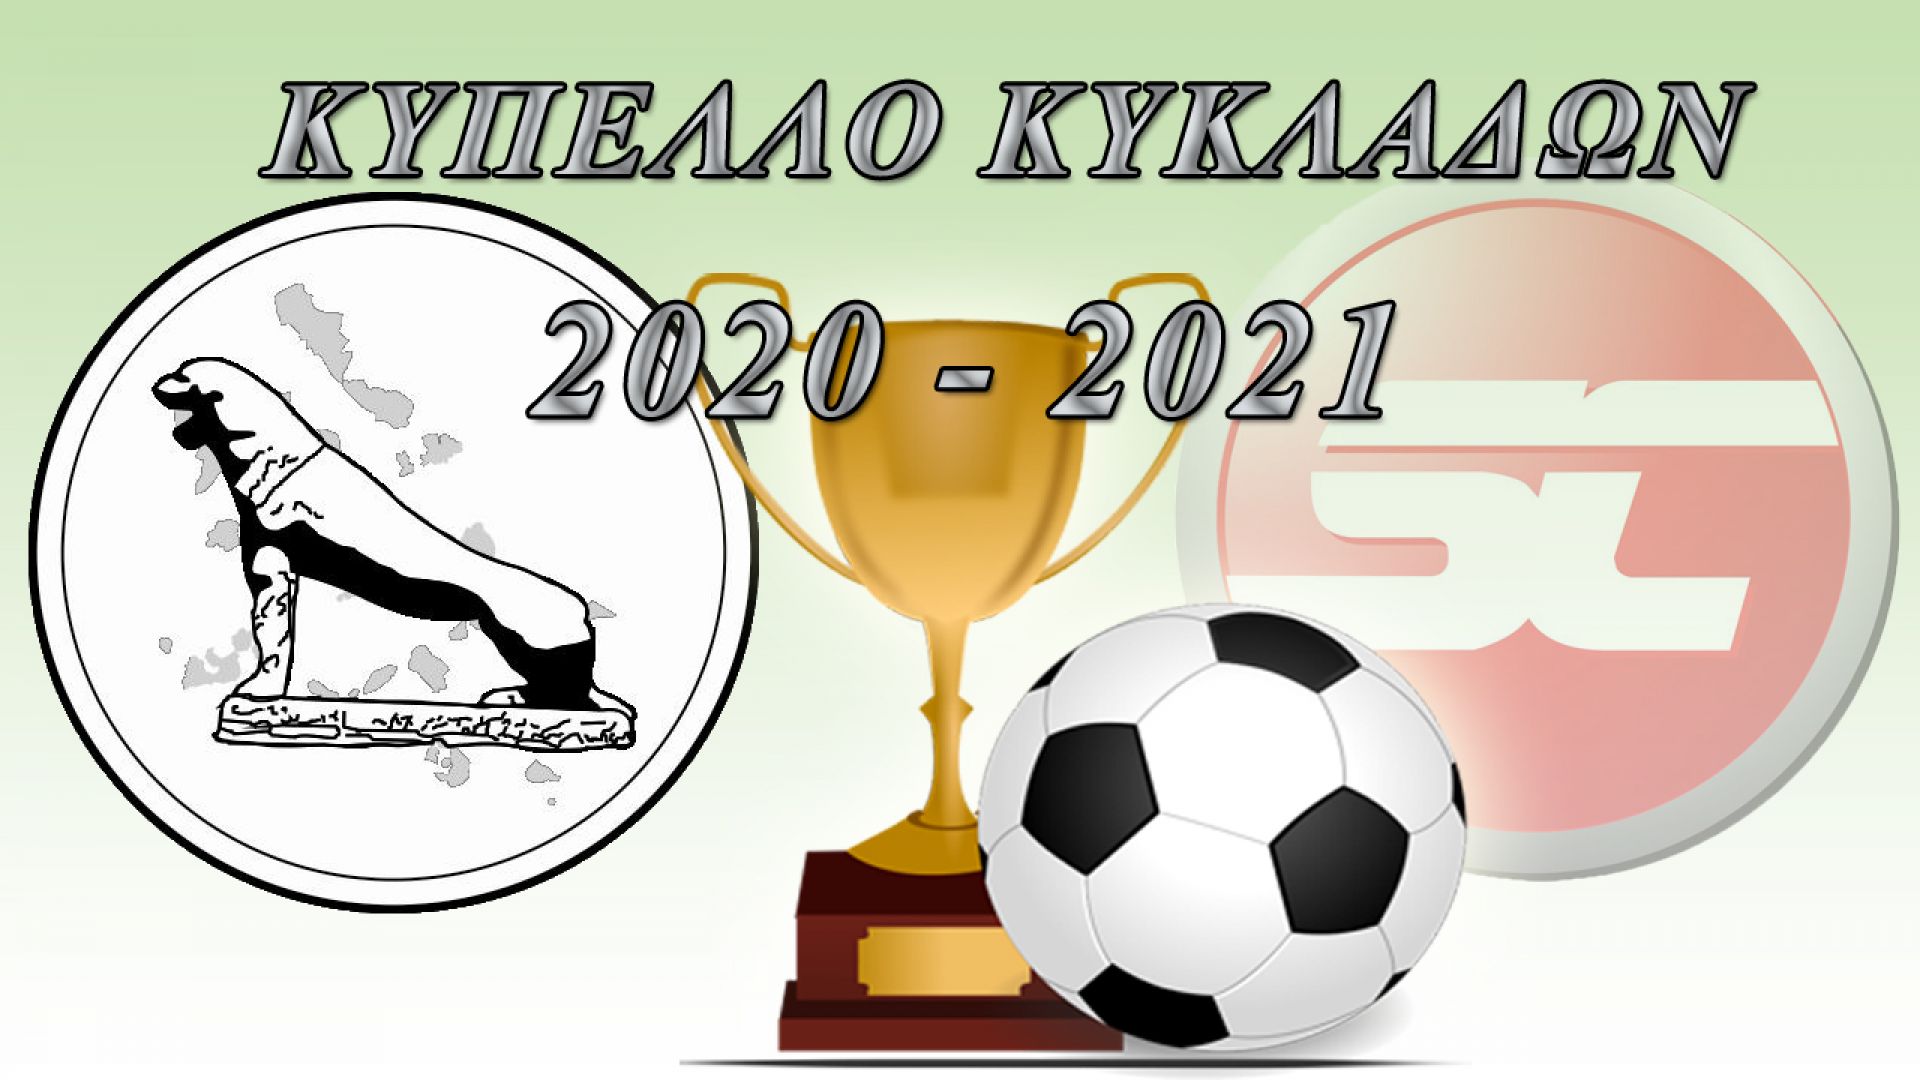 Η προκήρυξη του Κυπέλλου Κυκλάδων 2020-2021 (στις 3/10 η έναρξη)